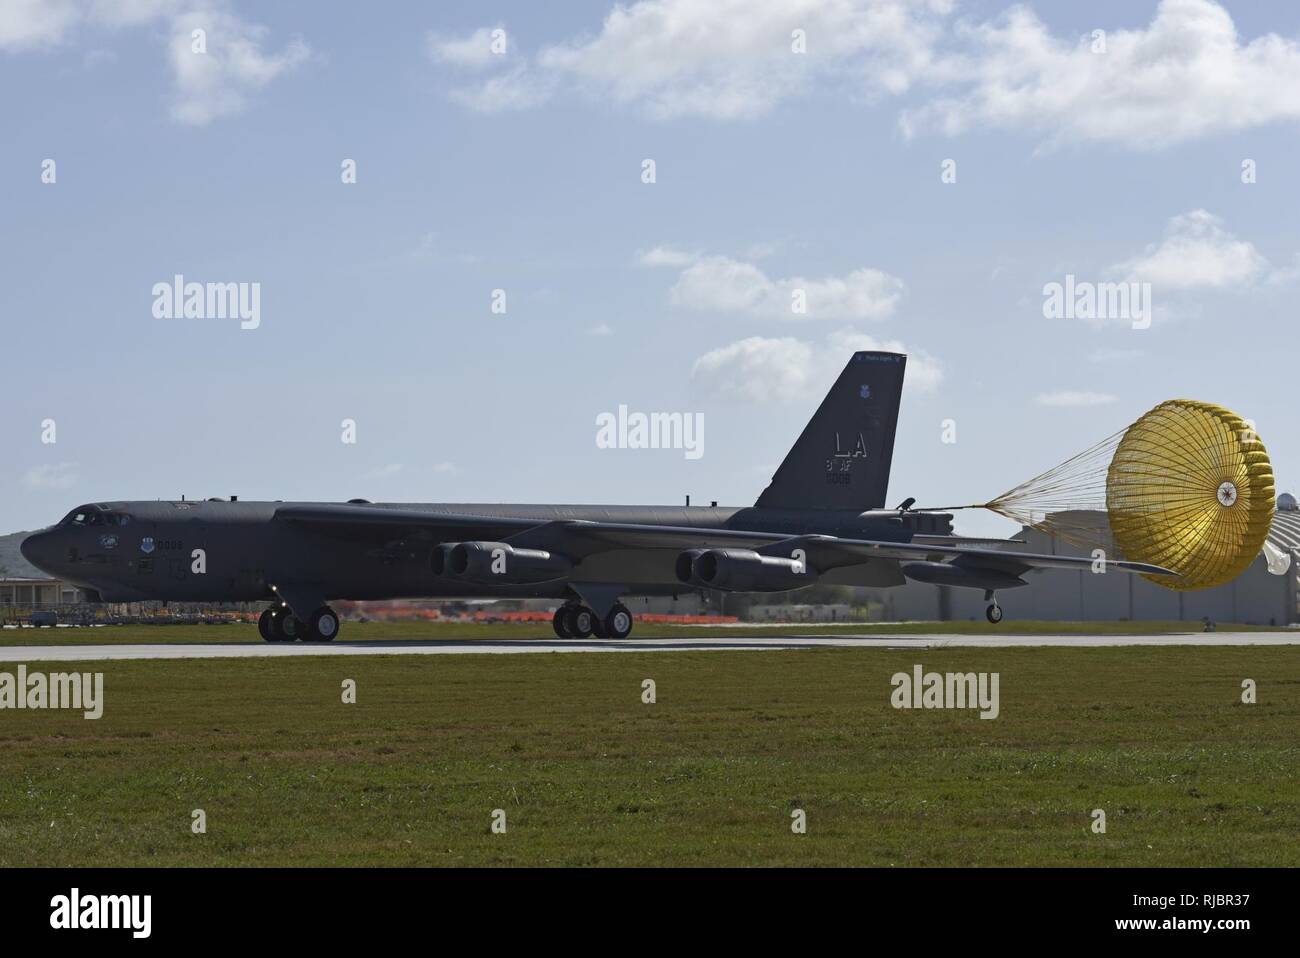 Ein US Air Force Bomber B-52 Stratofortress landet bei Andersen Air Force Base, Guam Jan. 16, 2018. Die stratofortress ist einer von sechs US Air Force B-52 H Stratofortress Bombers und ca. 300 Flieger von Barksdale Air Force Base (AFB), Louisiana, Bereitstellung der Andersen AFB, Guam, zur Unterstützung des US Pacific Command (FIRMA PACOM) Kontinuierliche Bomber Präsenz (CBP) Mission. Stockfoto